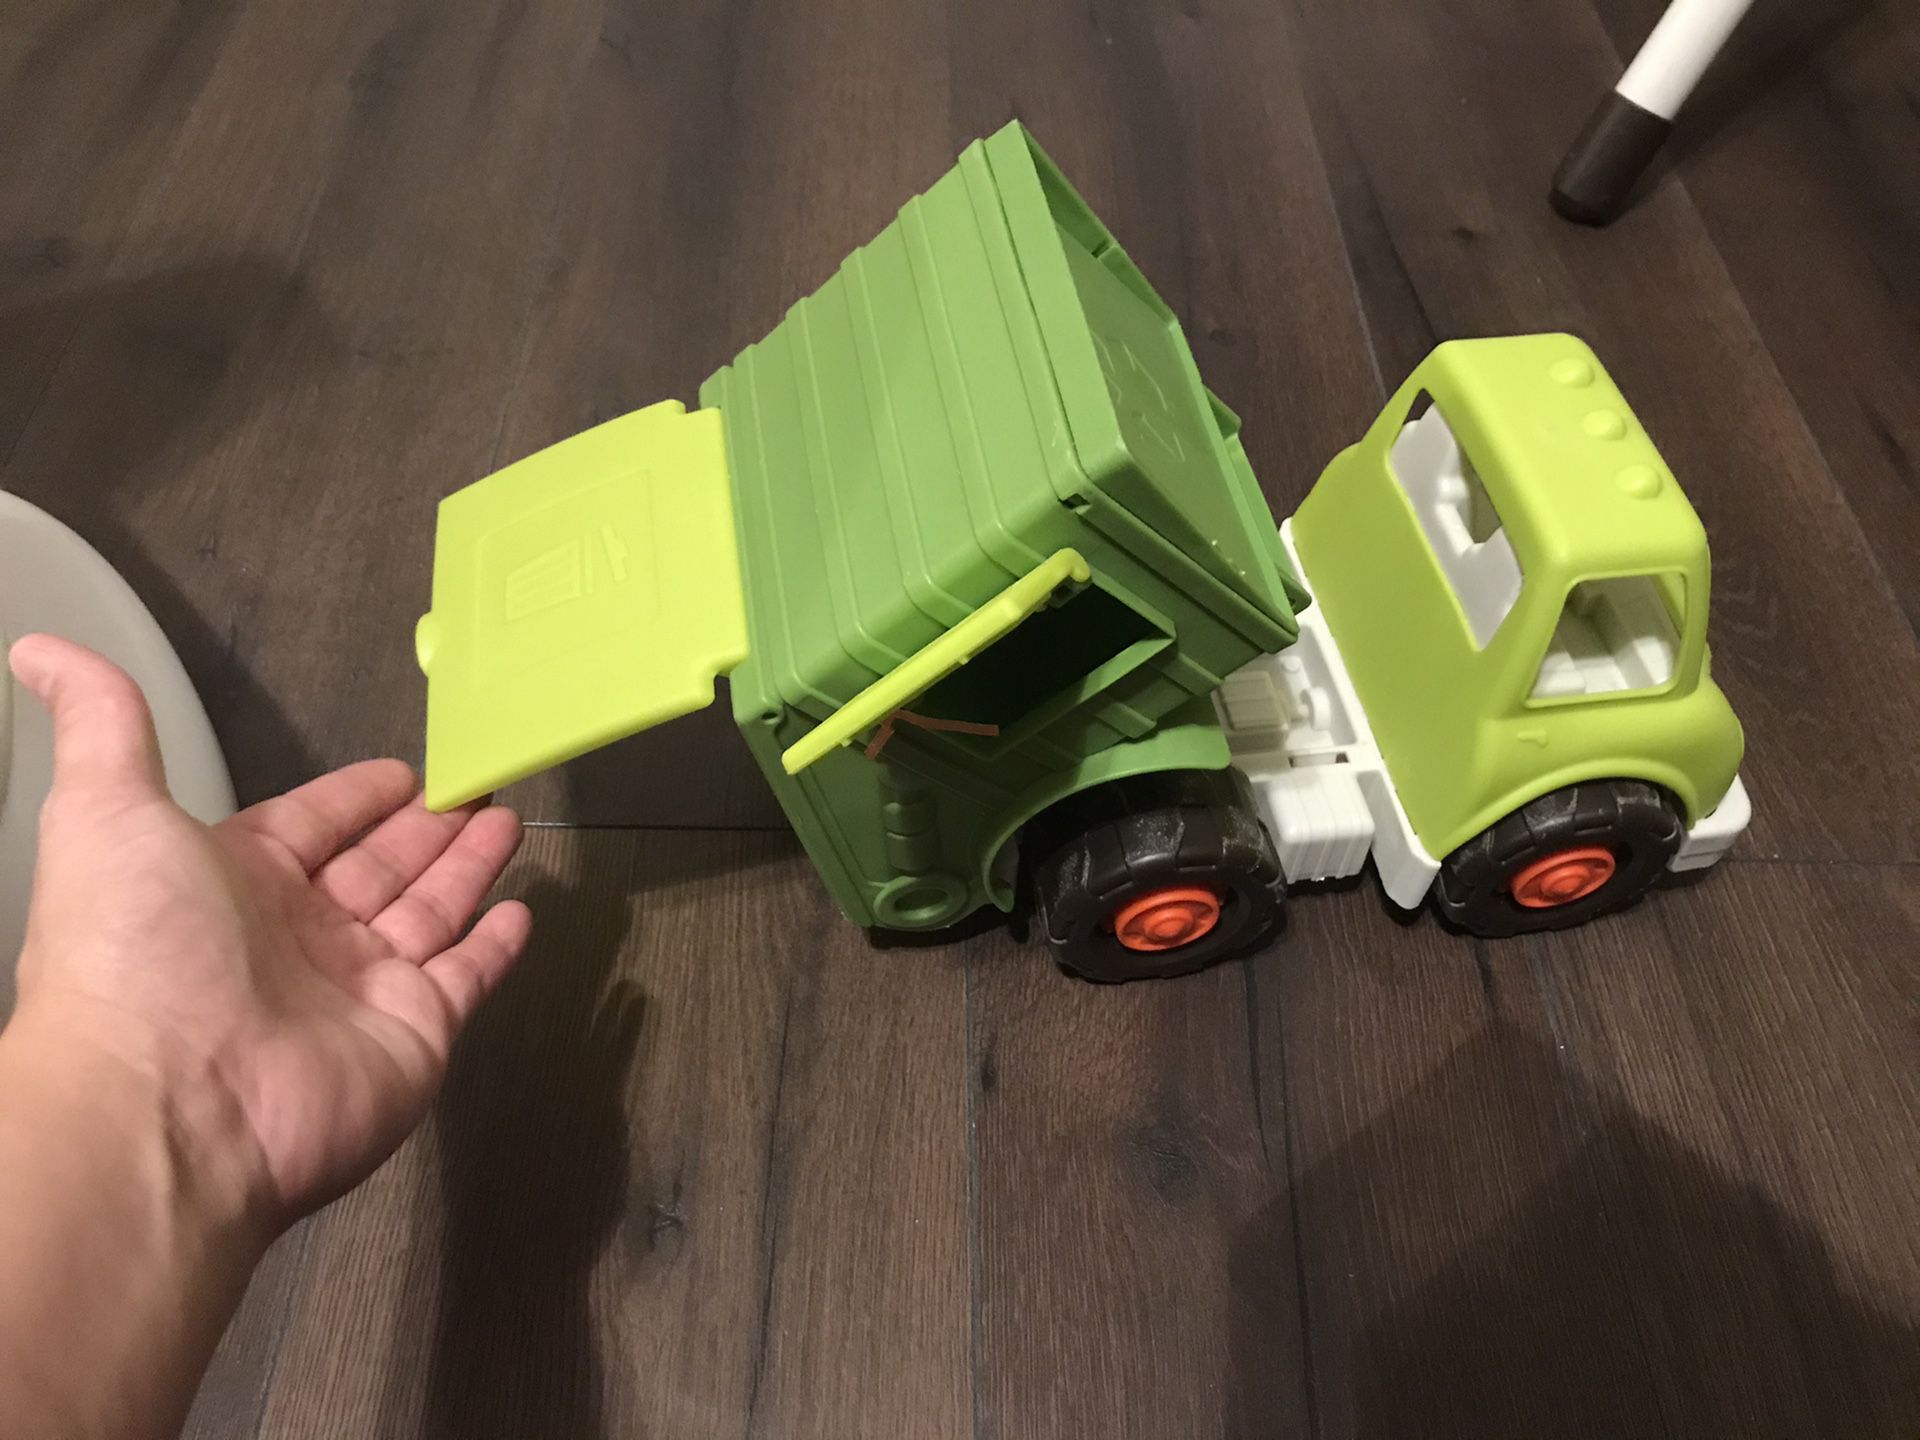 Toy dump truck